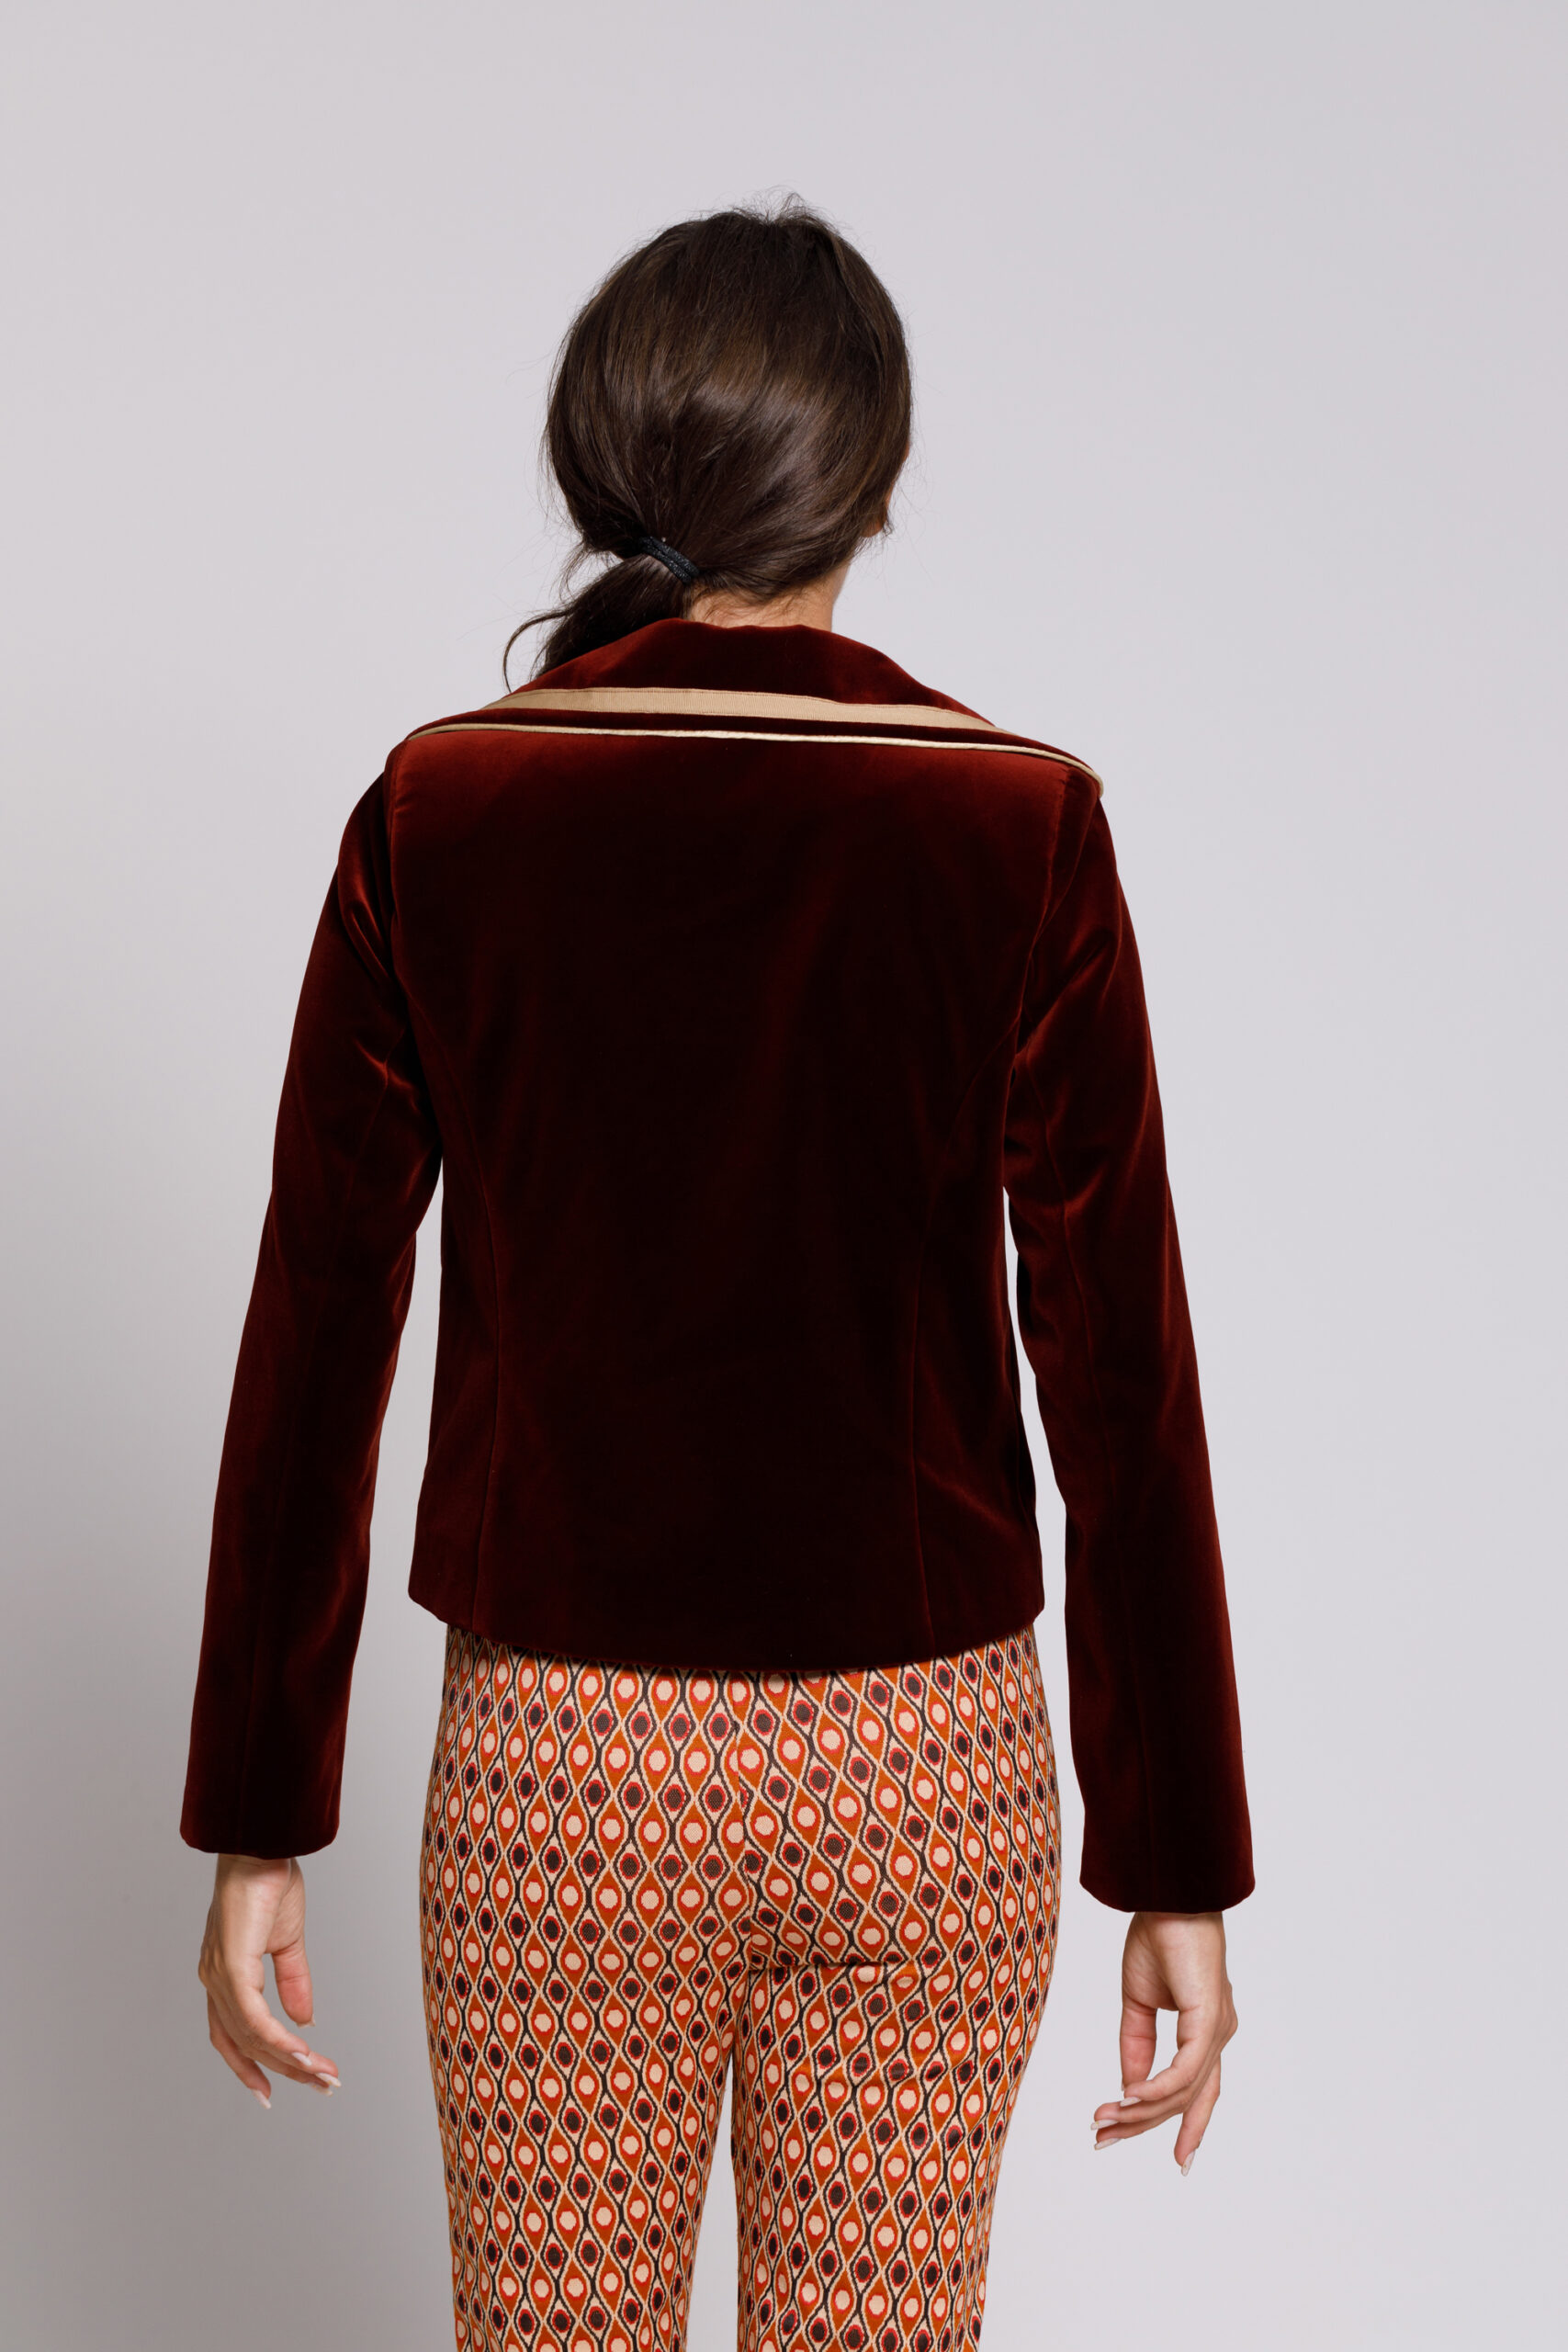 Jacheta DAVINA eleganta din catifea caramiziu. Materiale naturale, design unicat, cu broderie si aplicatii handmade